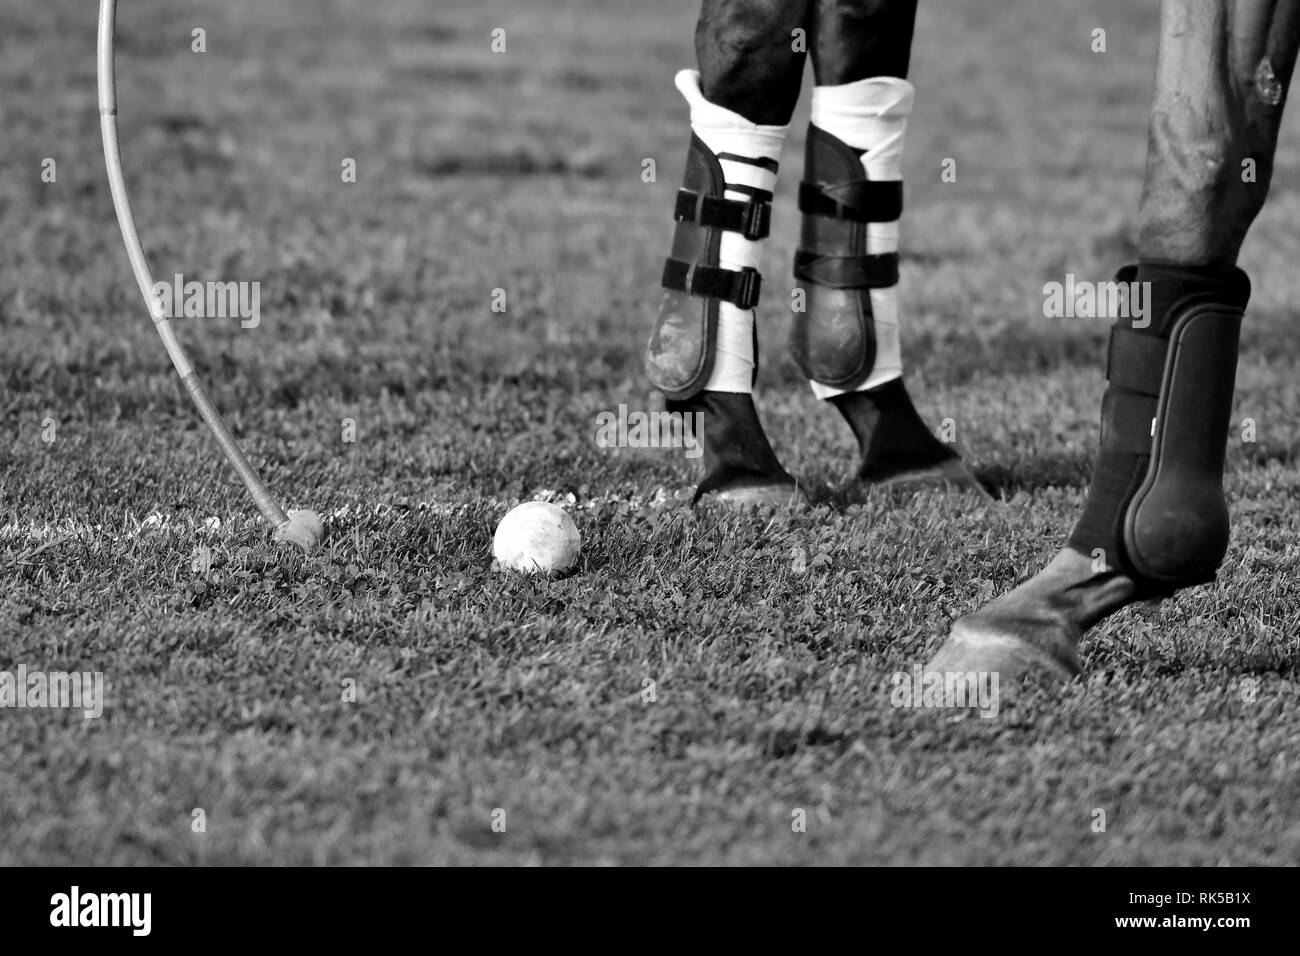 Cheval Polo jambes close up. Ball et maillet sur l'herbe. À l'horizontal, noir et blanc. Banque D'Images